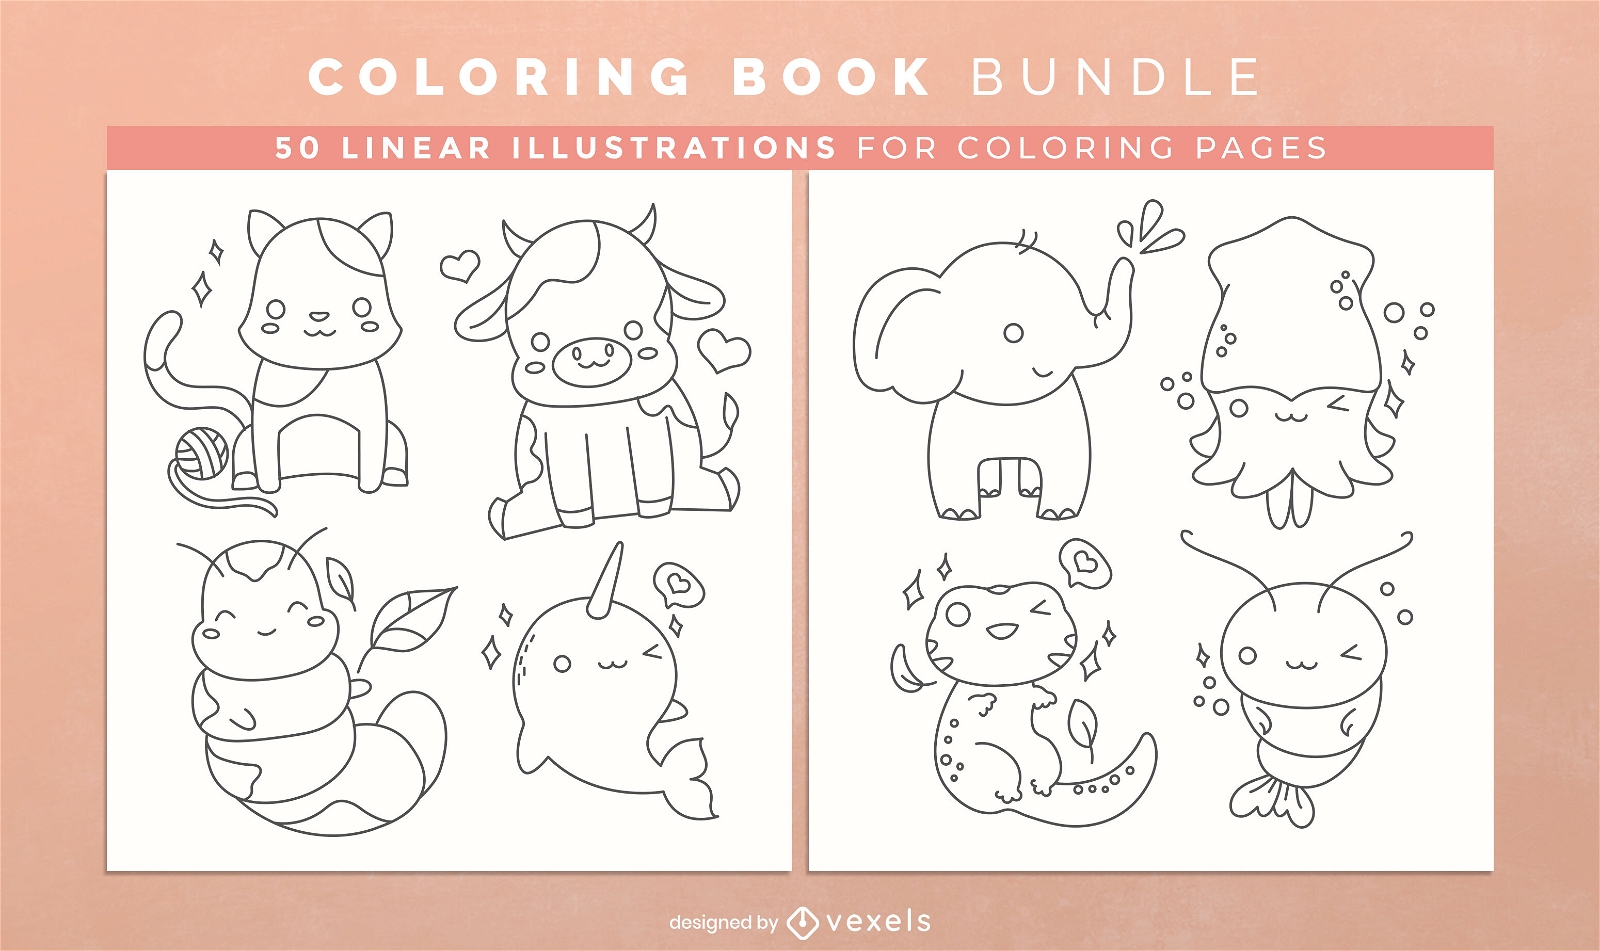 50 Desenhos de Gato para Imprimir e Colorir - Online Cursos